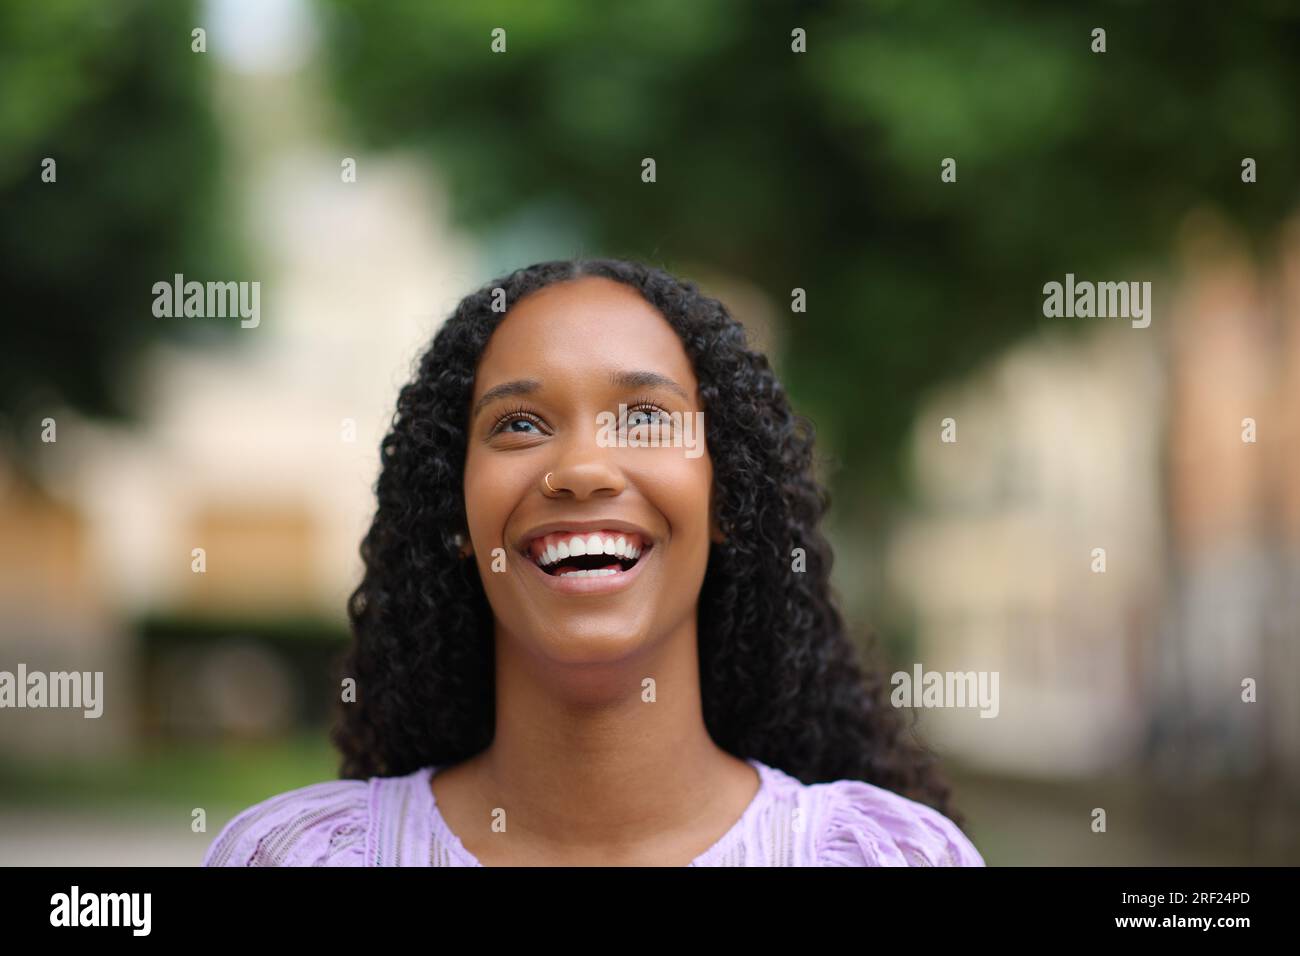 Retrato de vista frontal de una mujer negra riendo mirando hacia arriba con dientes blancos en la calle Foto de stock